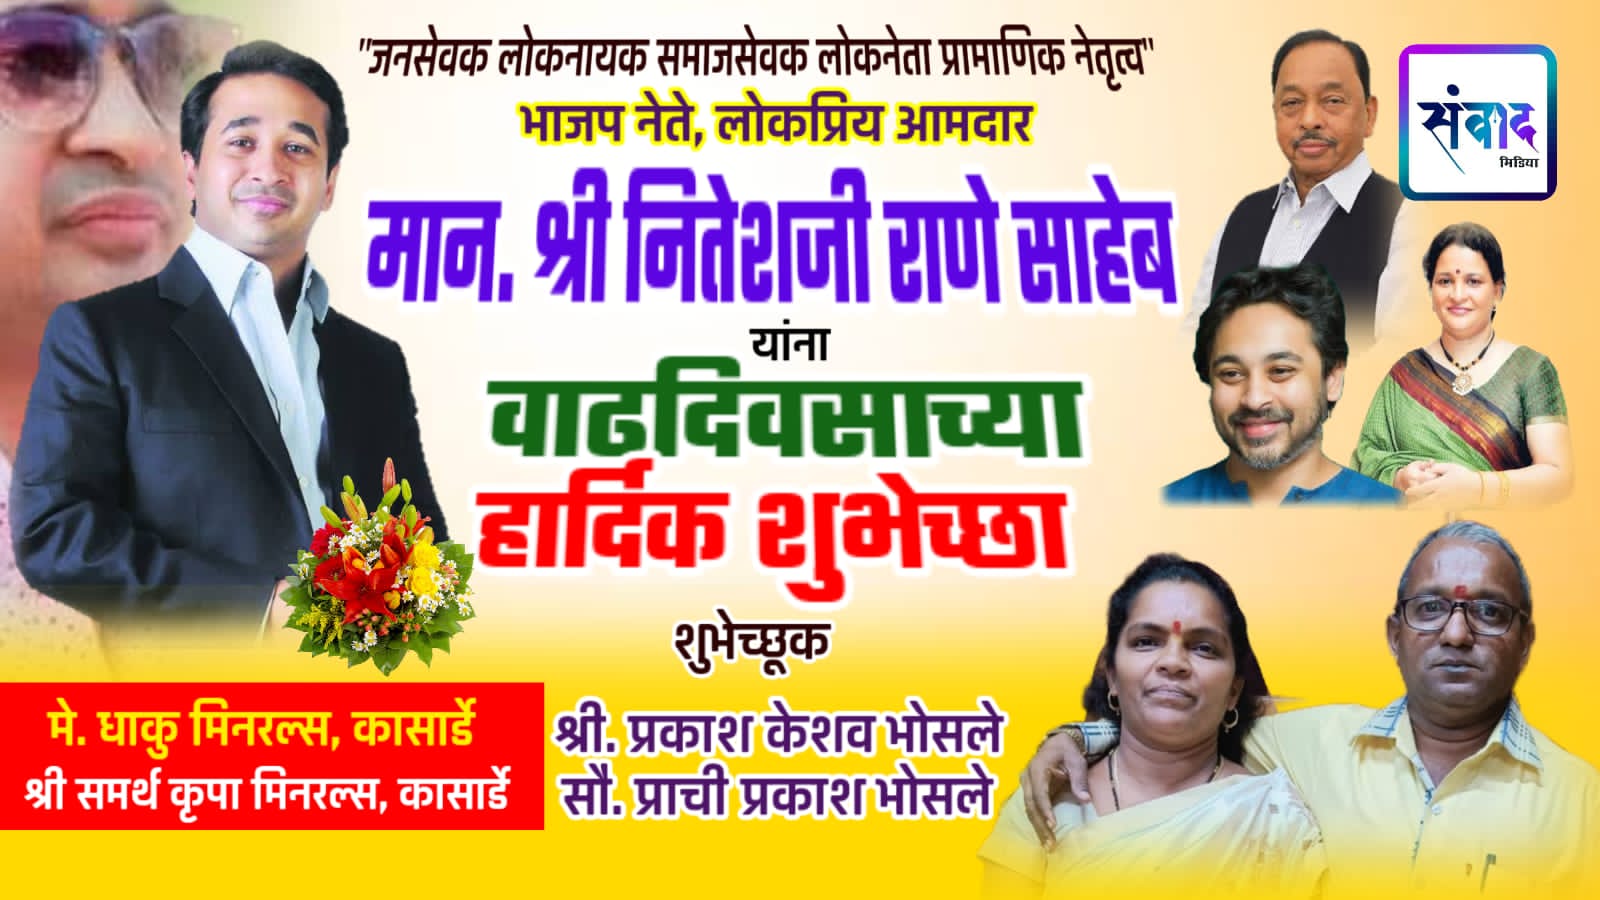 You are currently viewing भाजपा नेते, लोकप्रिय आमदार मान. श्री नितेशजी राणे साहेब यांना वाढदिवसाच्या हार्दिक शुभेच्छा ! – मे. धाकु मिनरल्स, कासार्डे